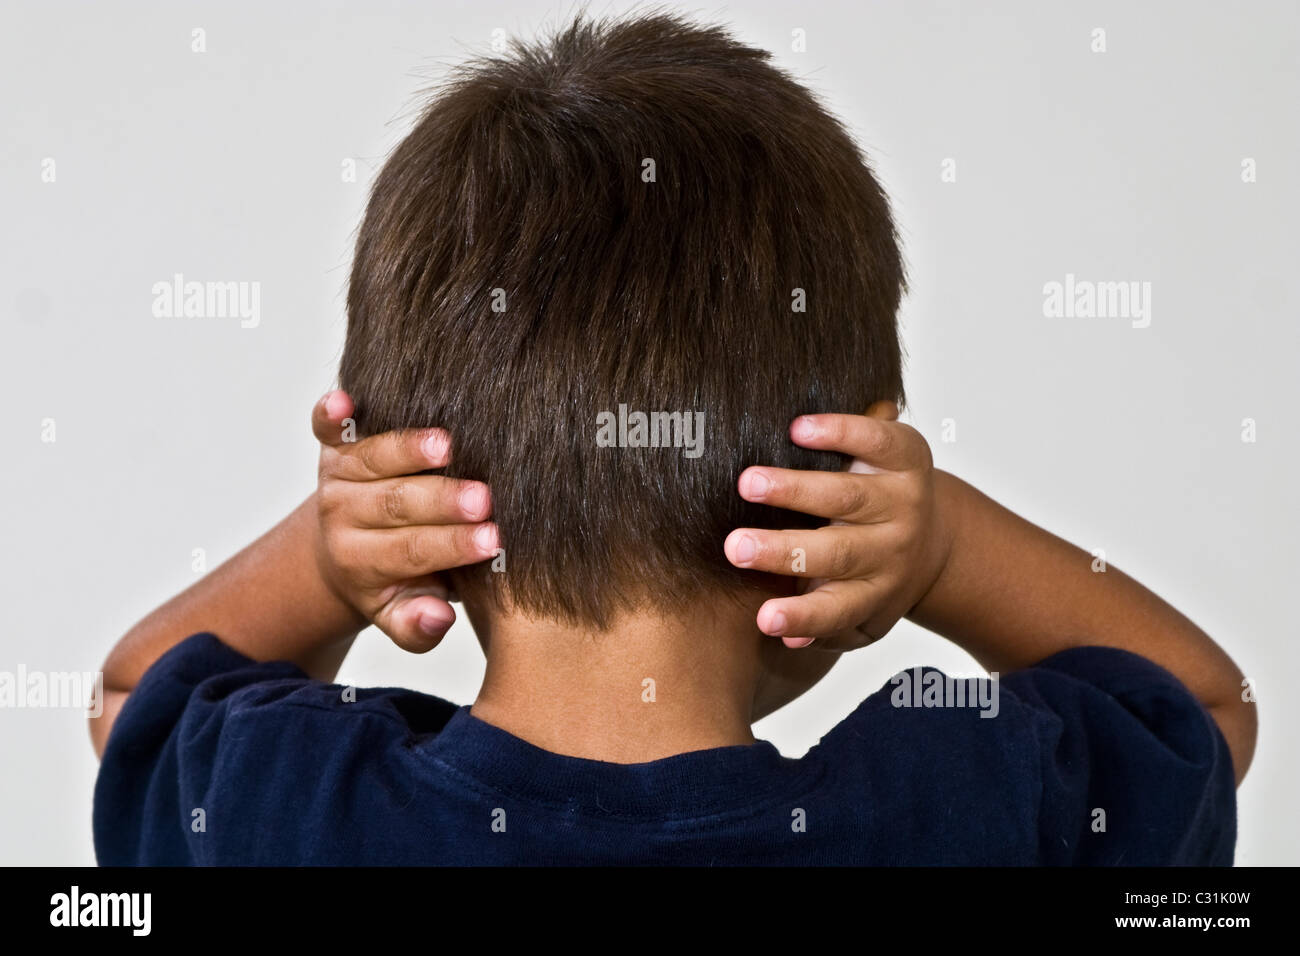 Strong gewollt stur 4-5 Jahre Jahre alt Hispanic junge Ohren mit den Händen abdecken. Herr © Myrleen Pearson Stockfoto